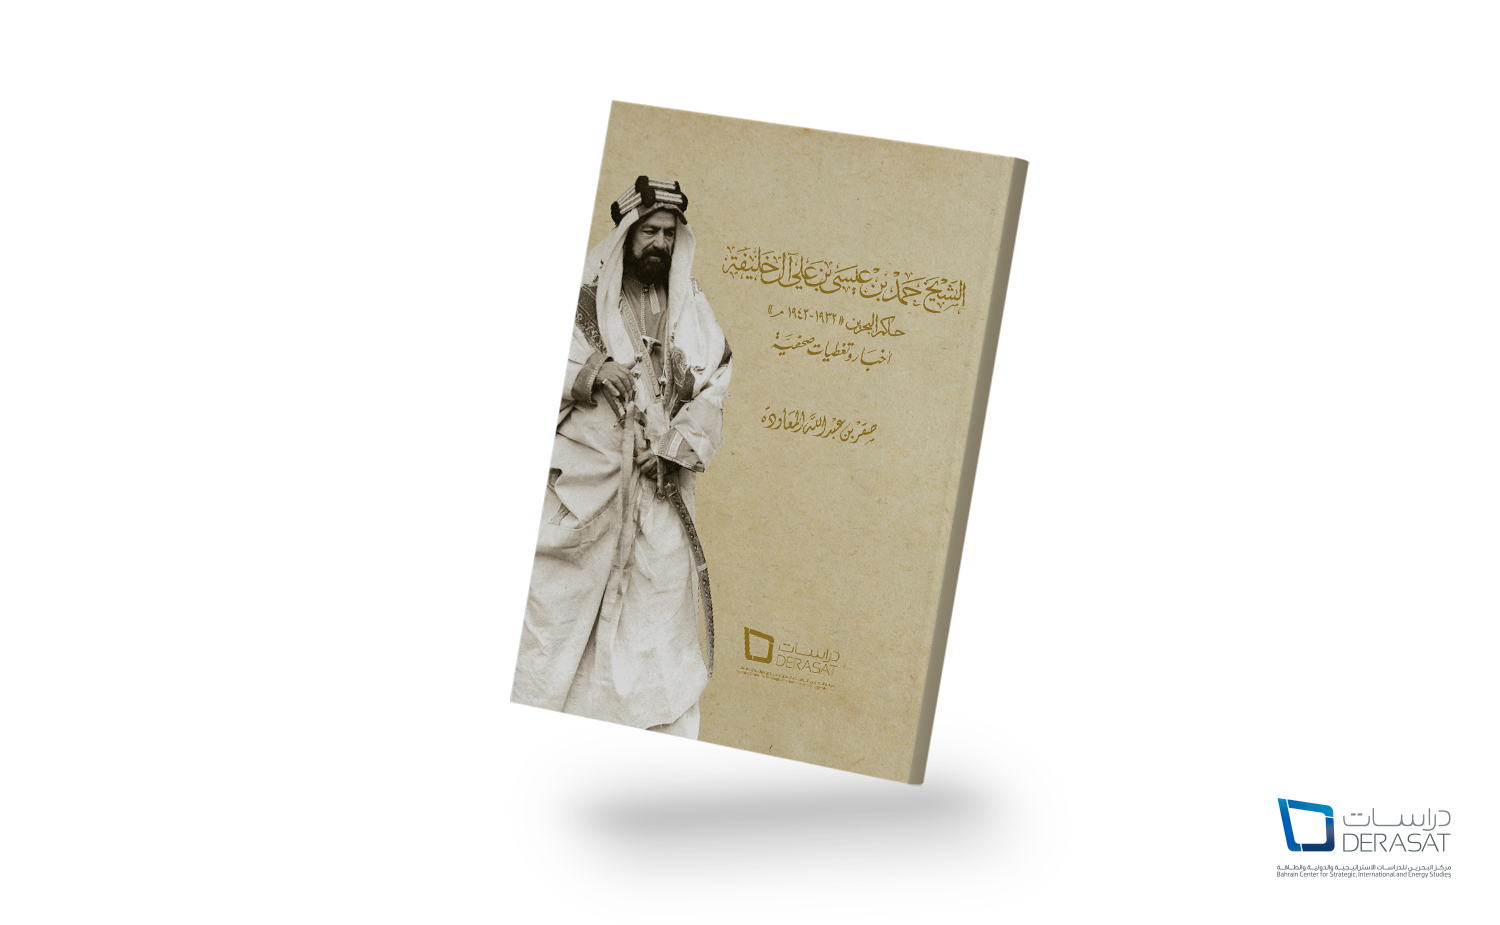 الشيخ حمد بن عيسى بن علي آل خليفة، حاكم البحرين 1932-1942 التغطية الإخبارية والصحفية